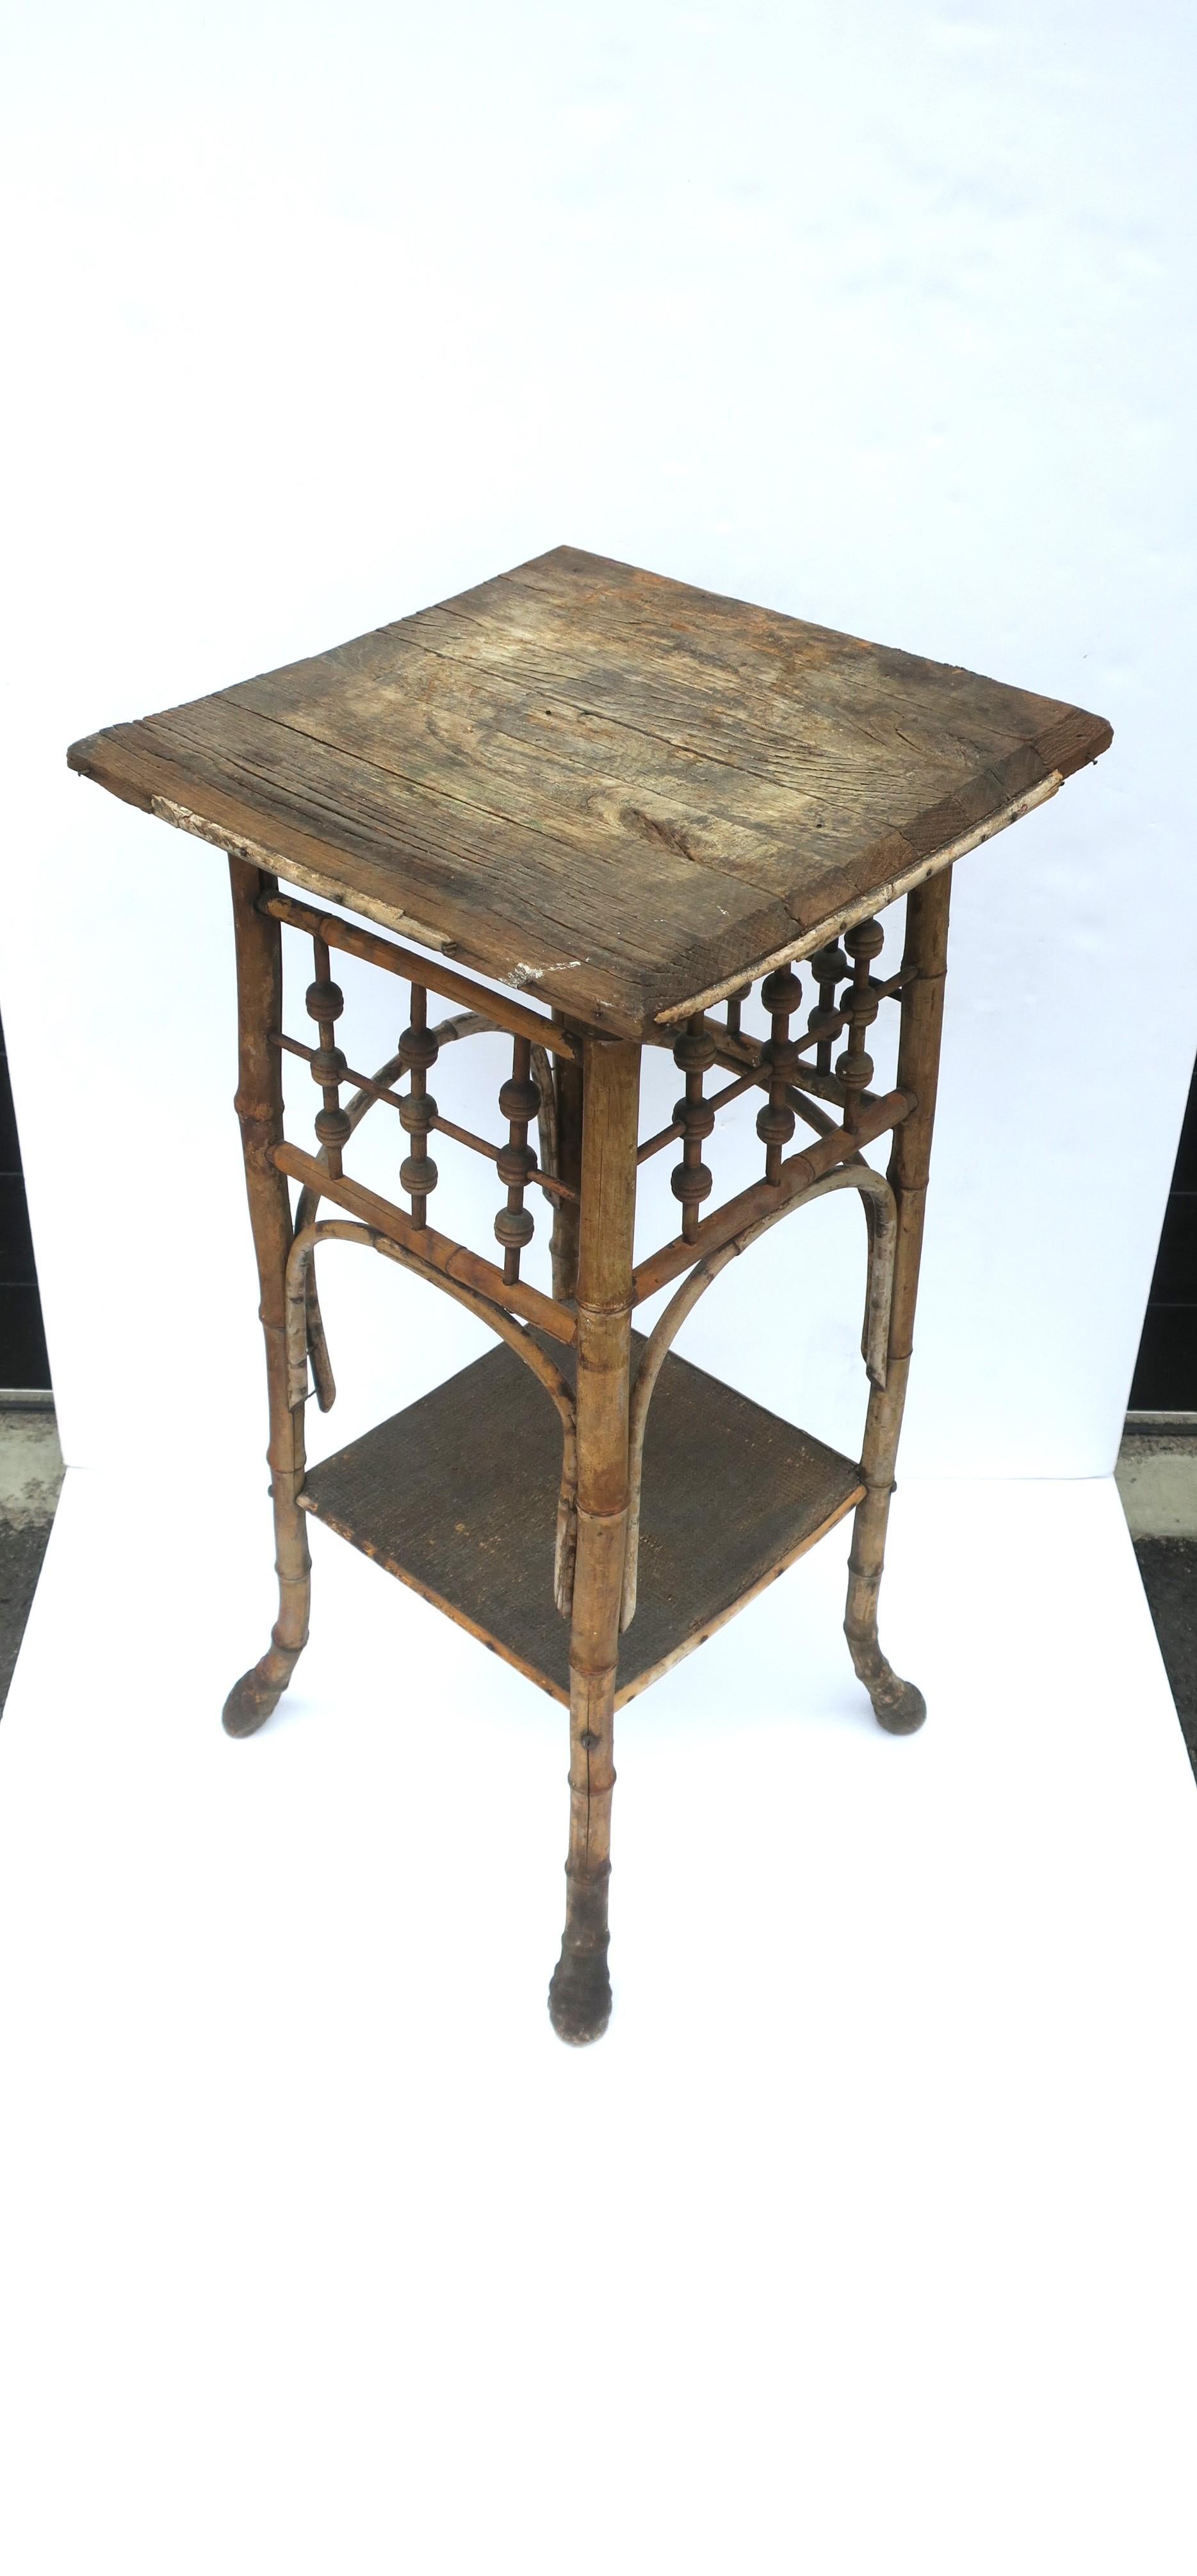 Table d'appoint rustique en bois et bambou avec étagère inférieure, de style victorien, vers le début du 20e siècle. Une table polyvalente, solide et stable. Dimensions : 14,25